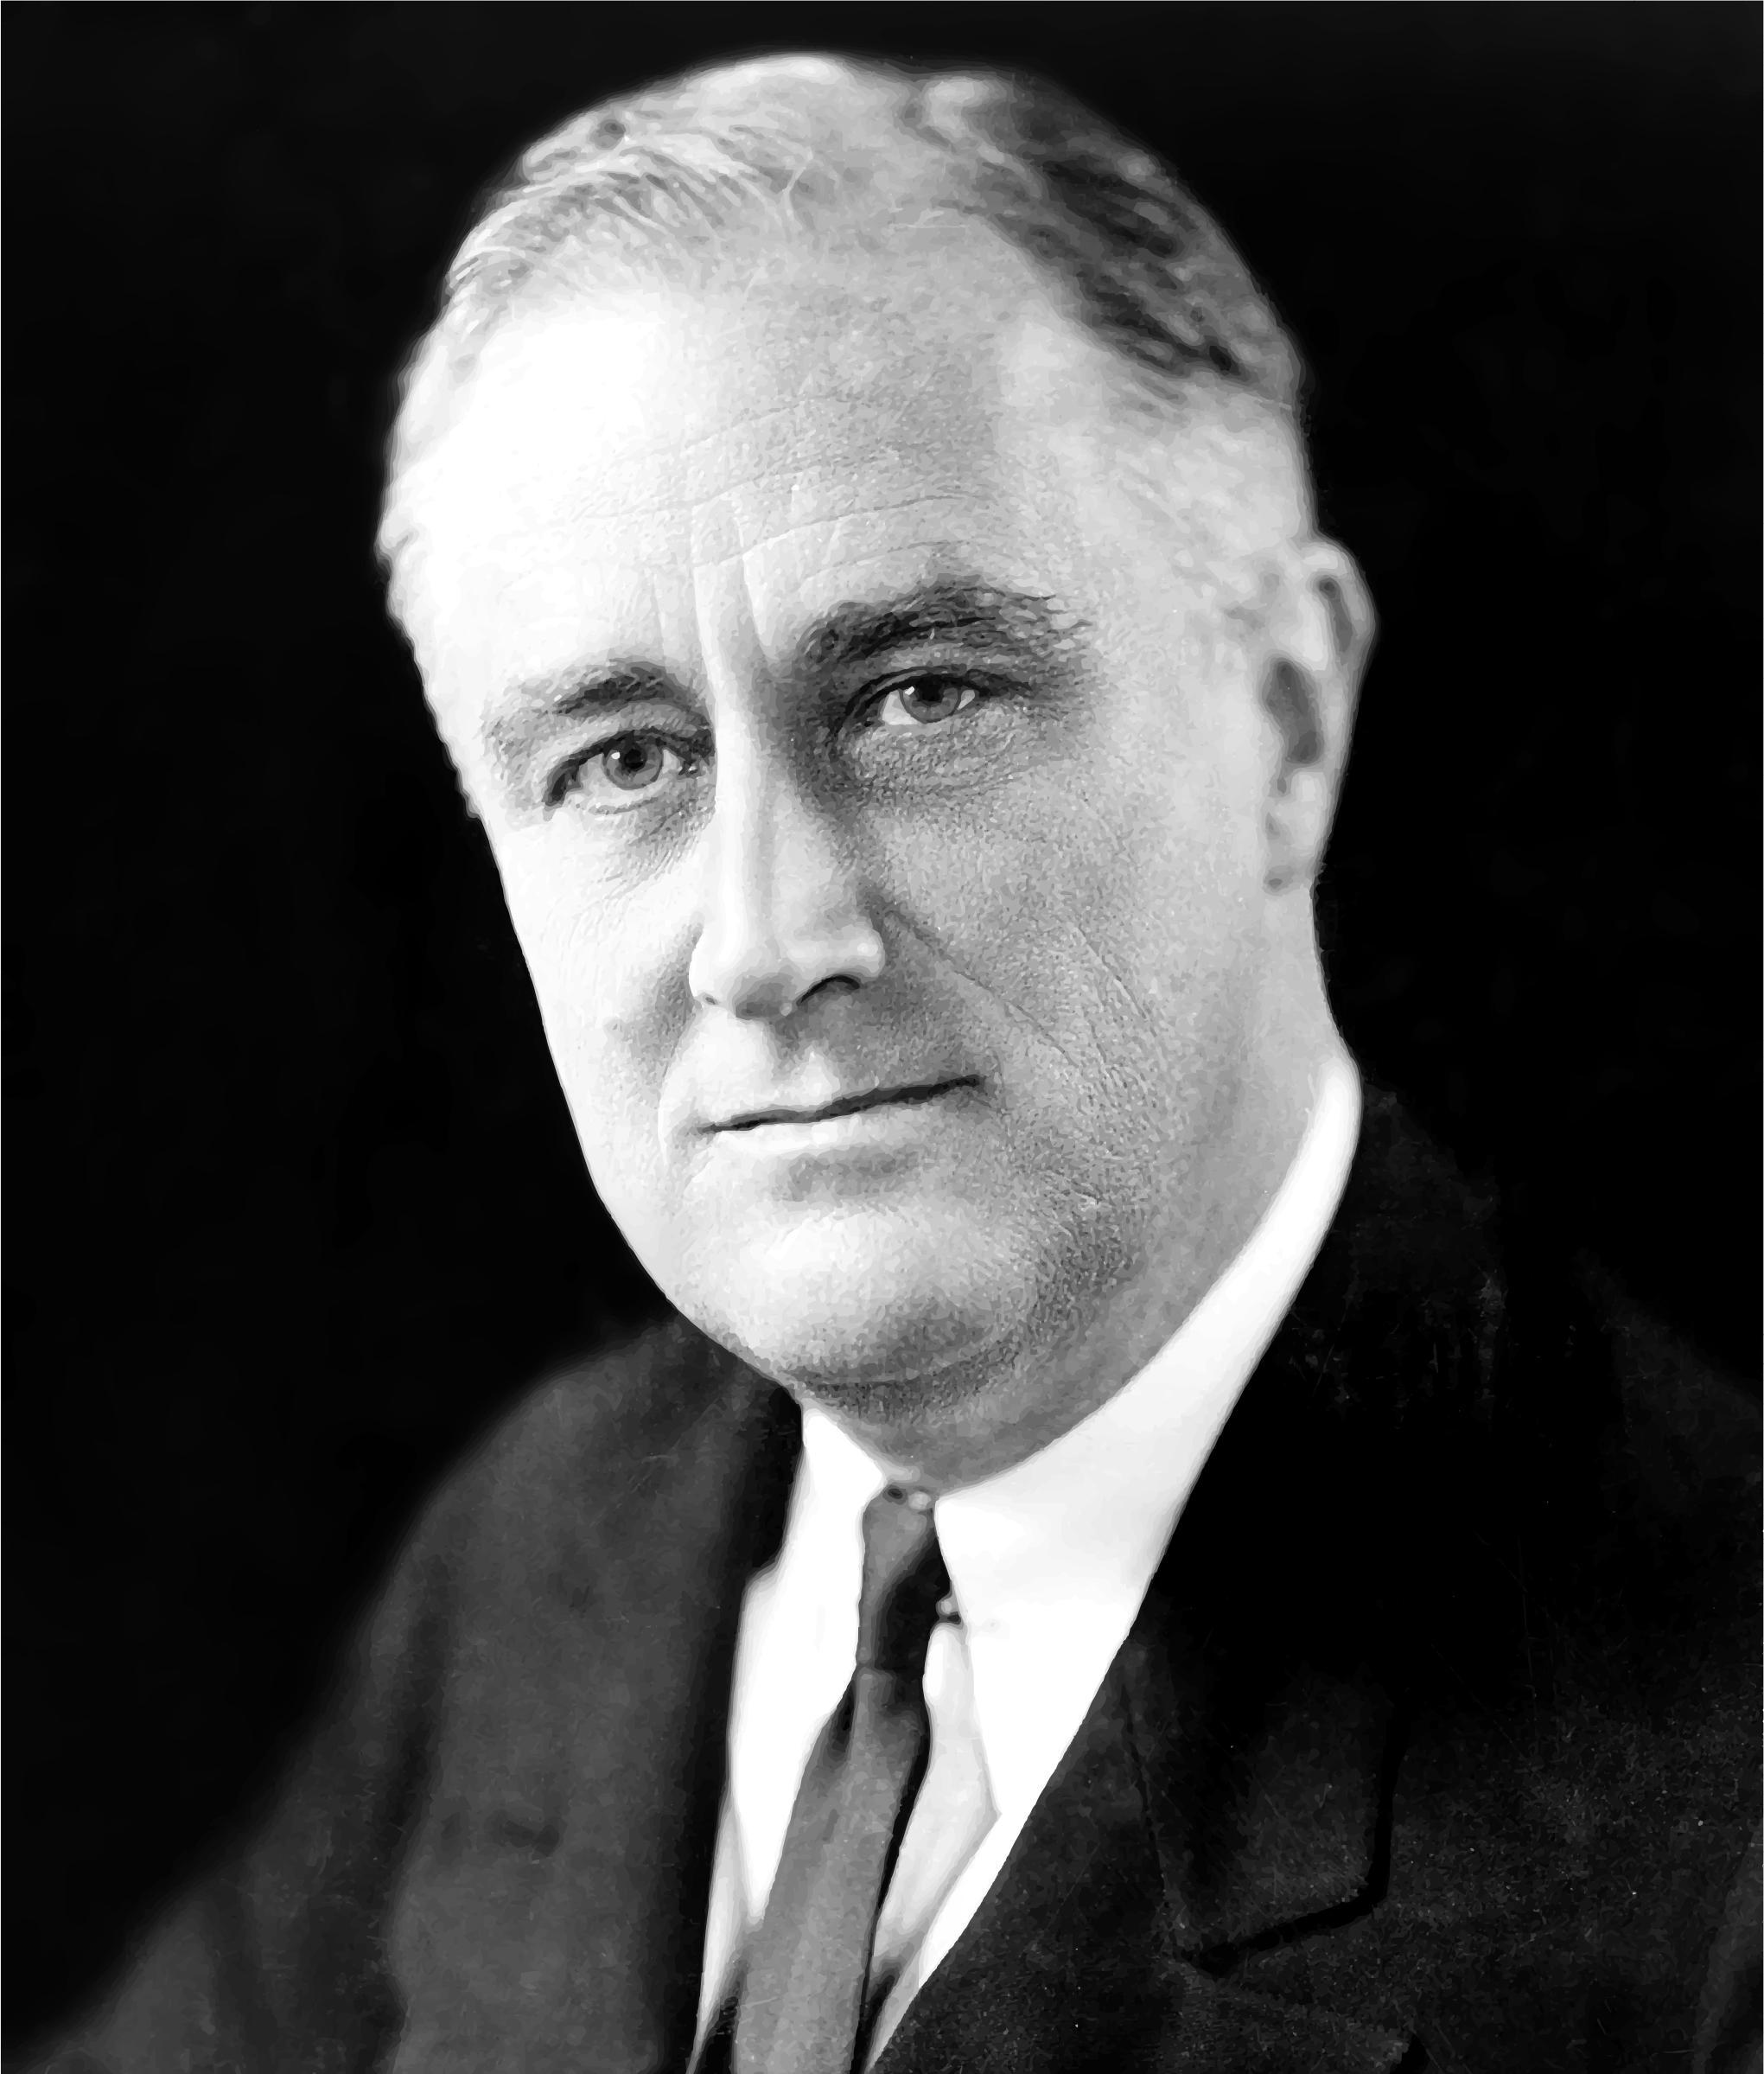 FDR (Franklin Delano Roosevelt) Portrait icons